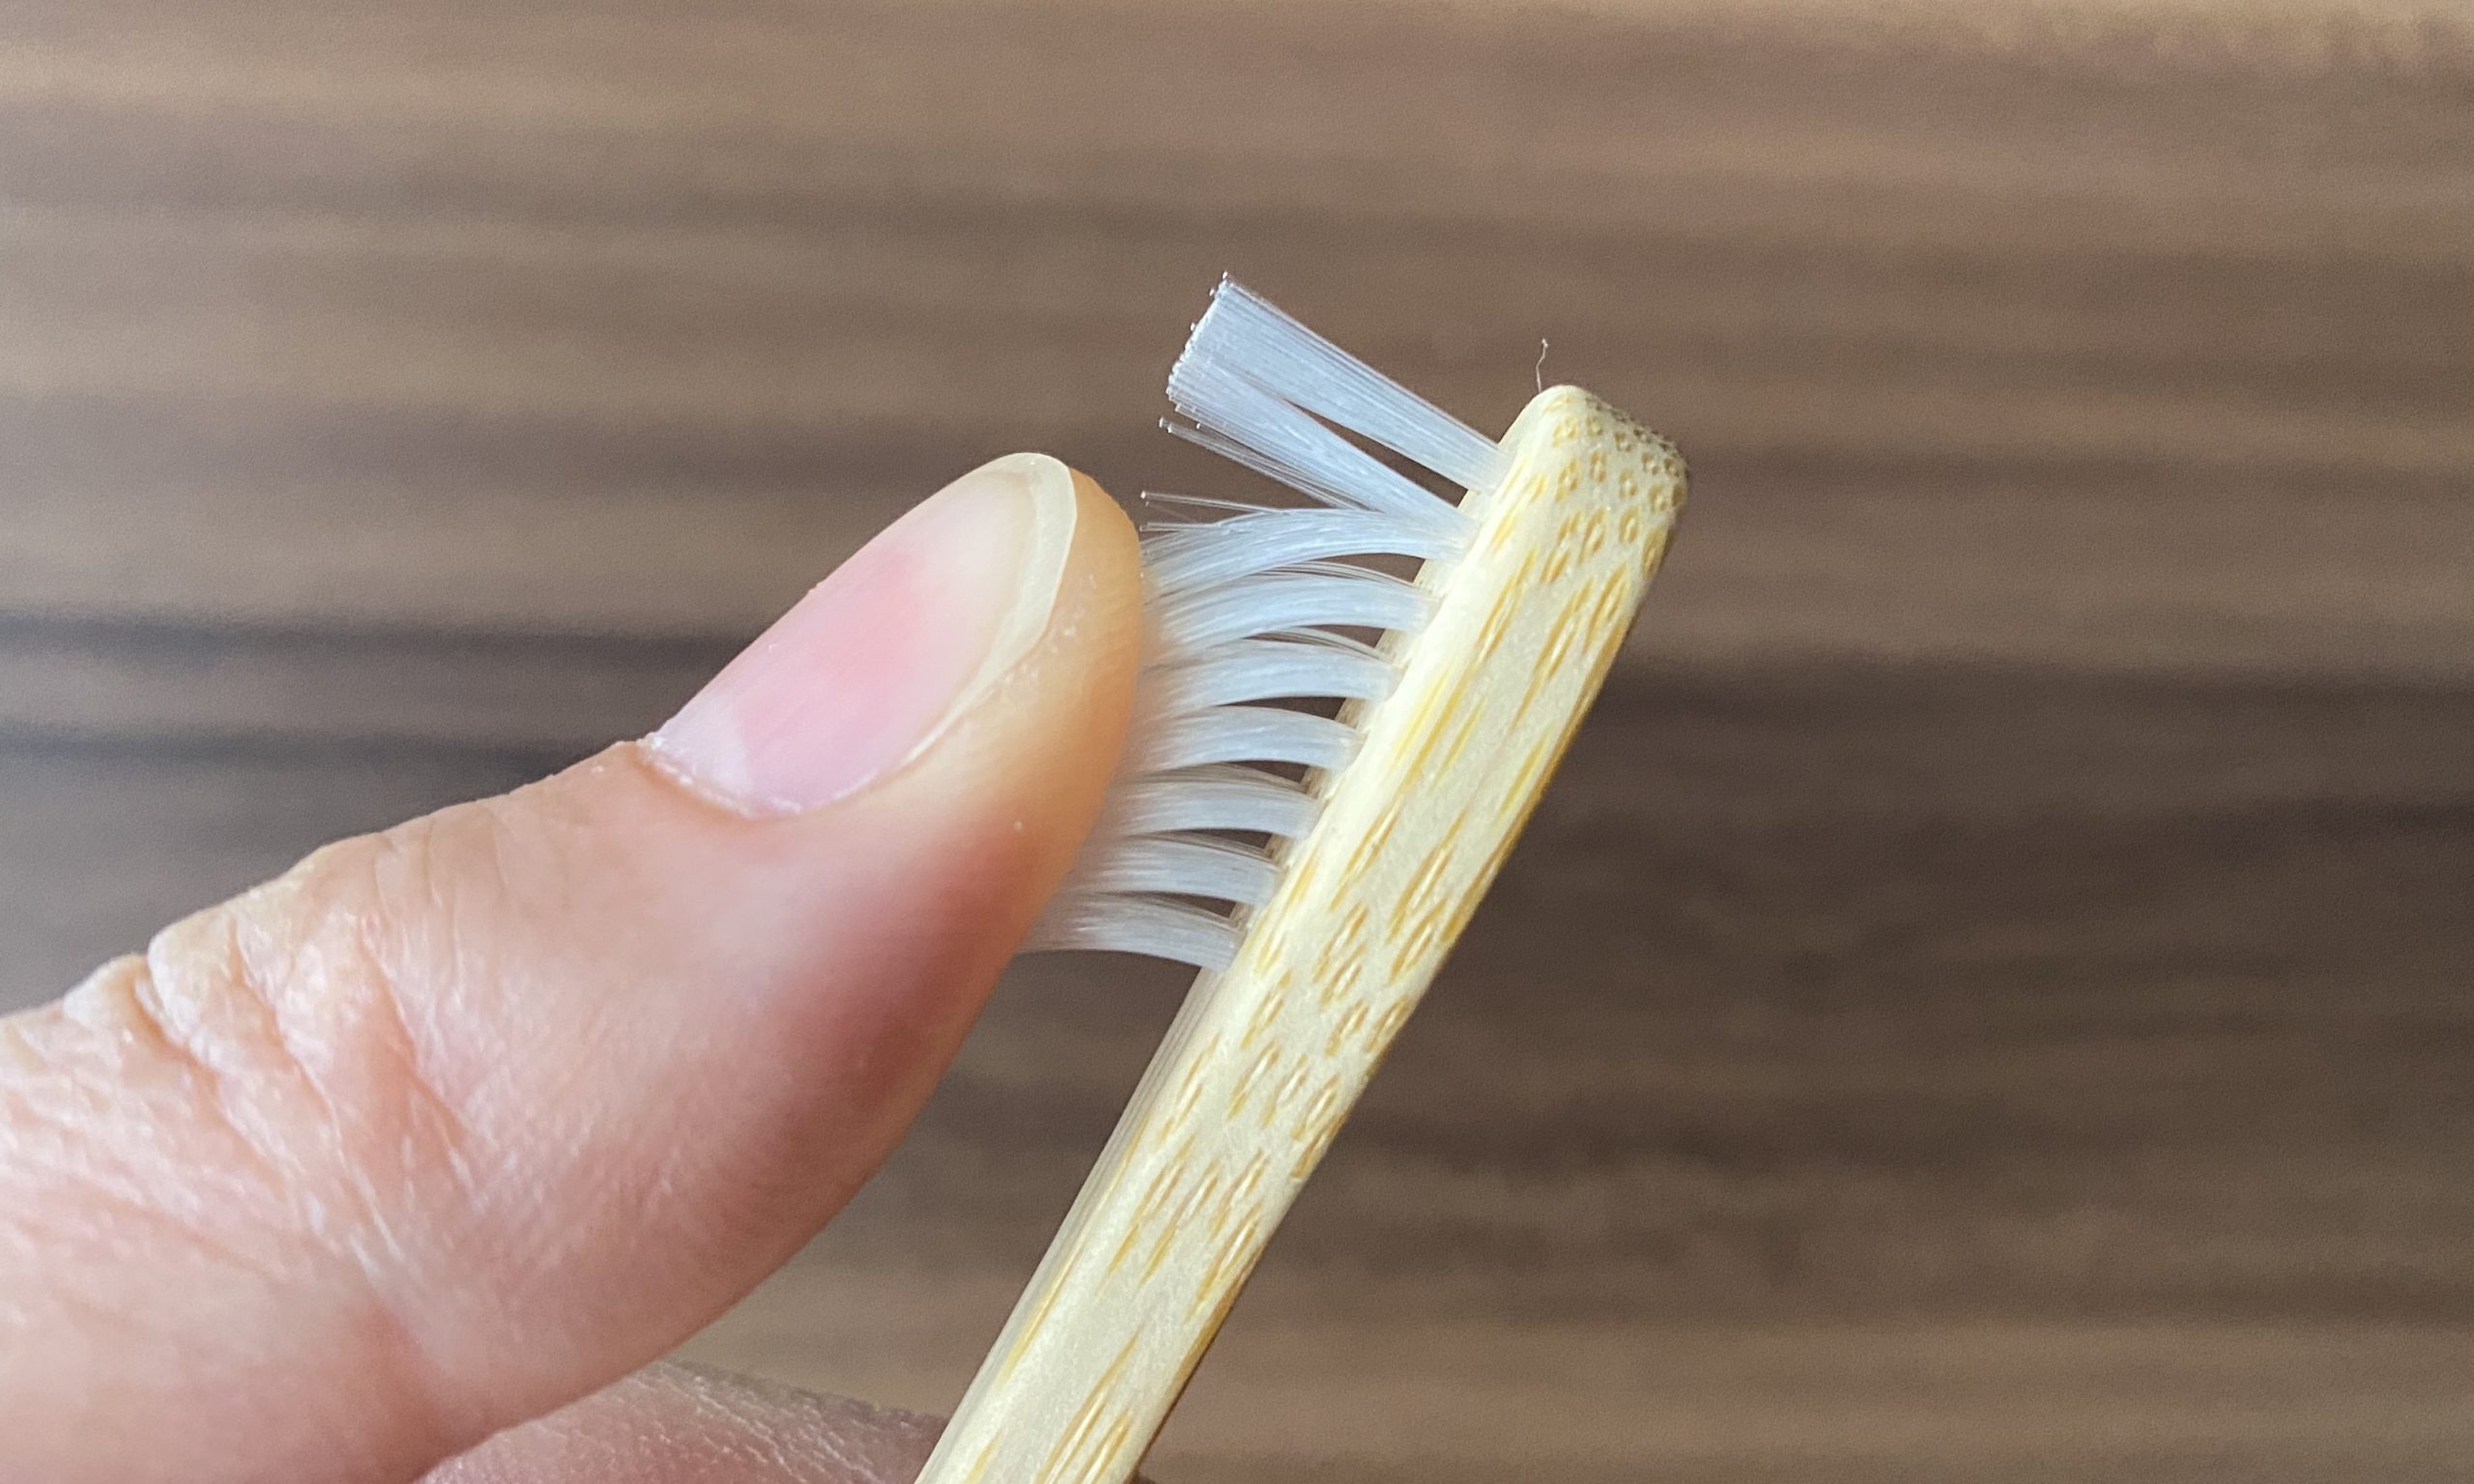 竹の歯ブラシ「MiYO organic 」使ってみた！メリットデメリットまとめ